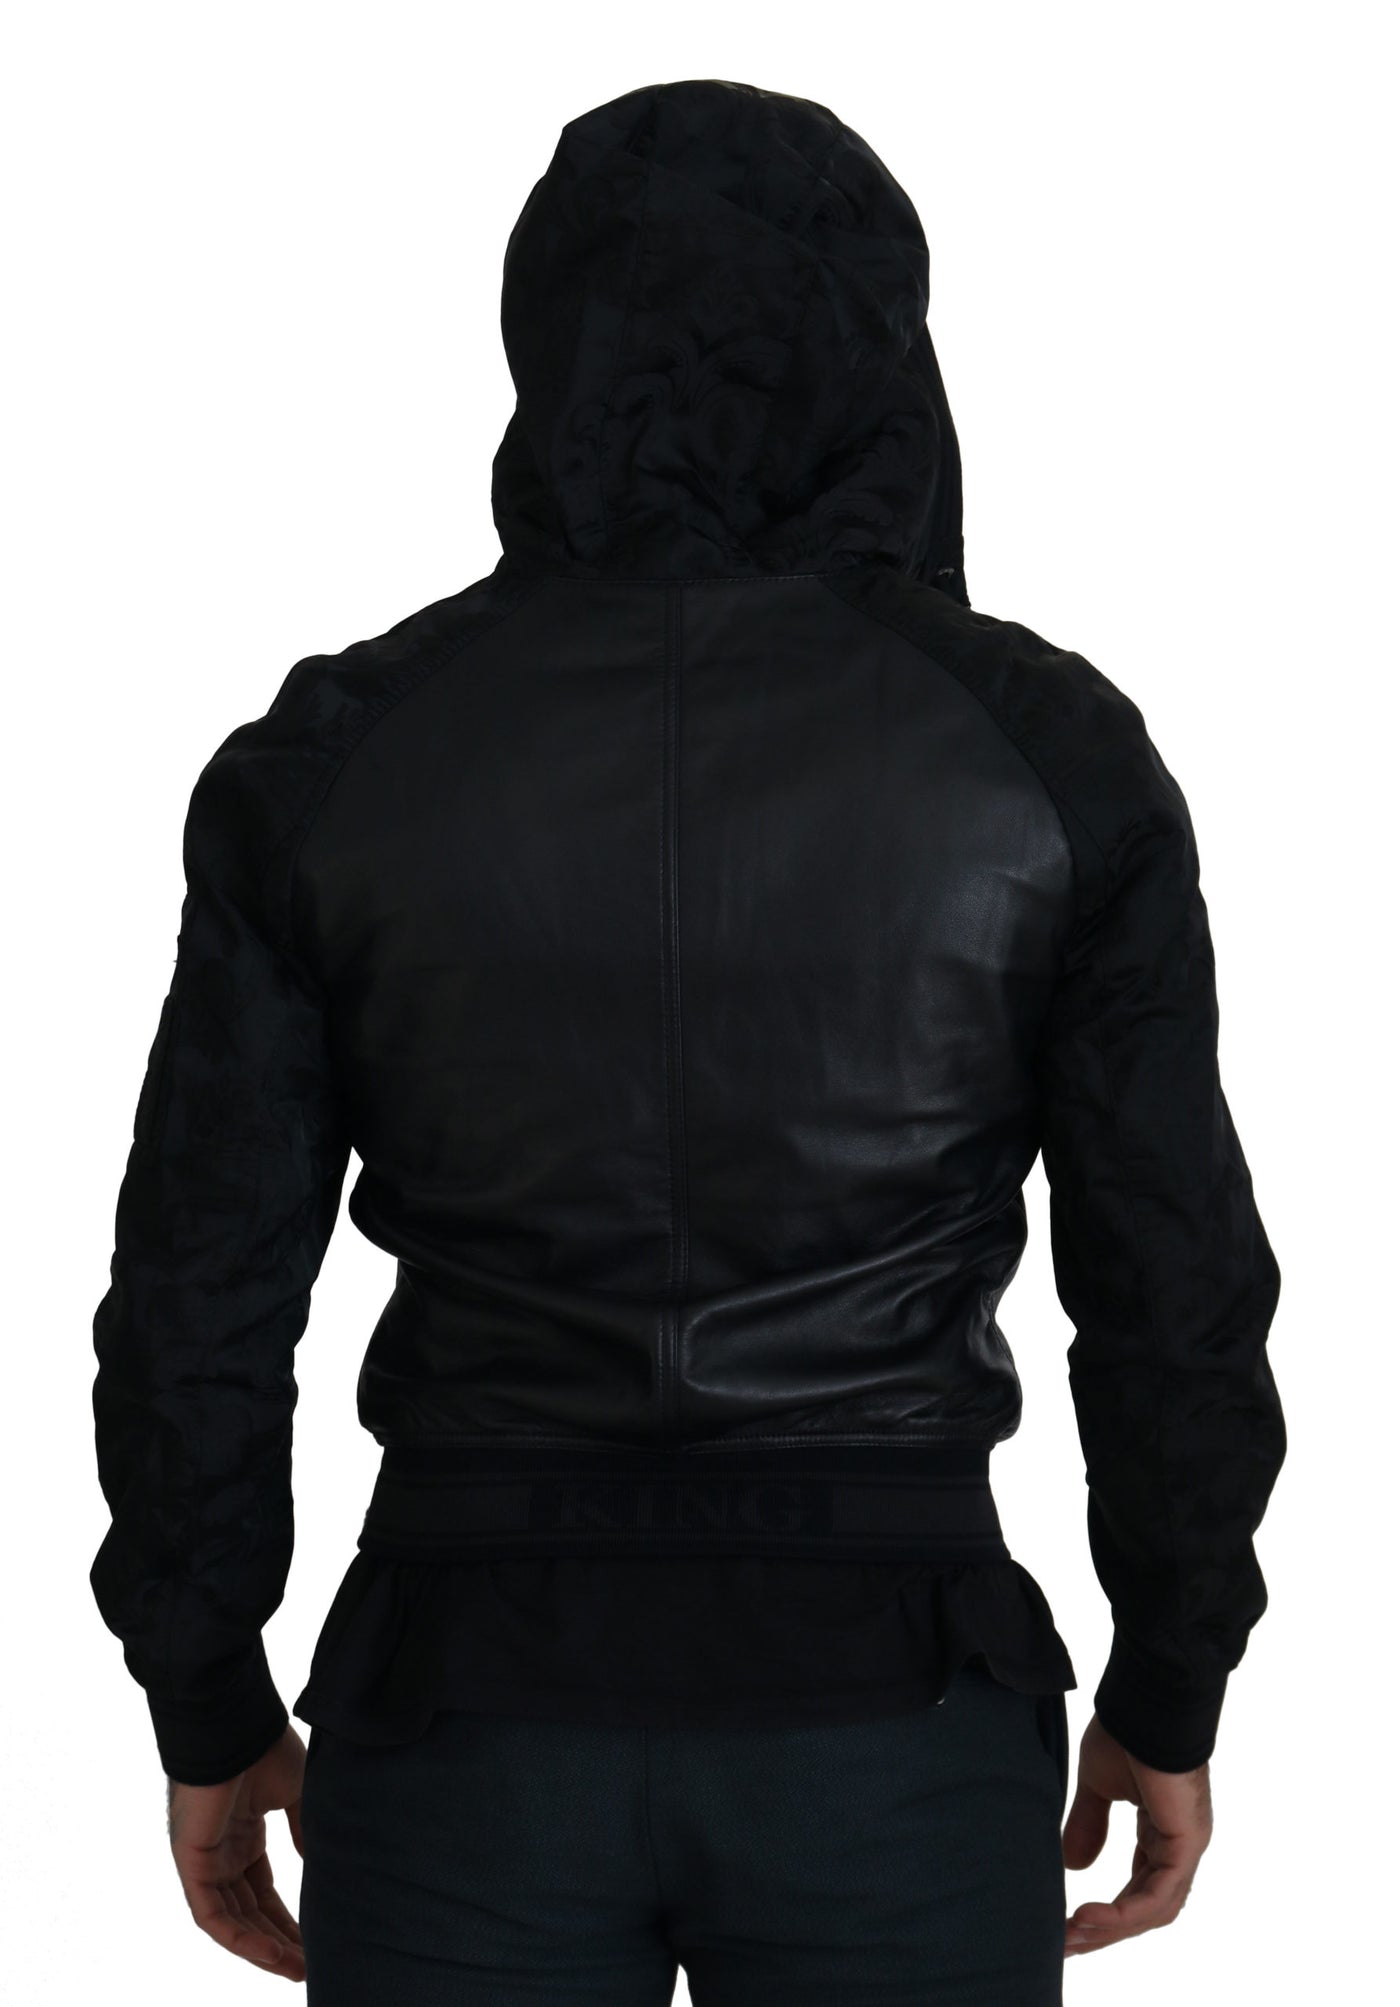 Black Leather Hooded Short Coat Jacket